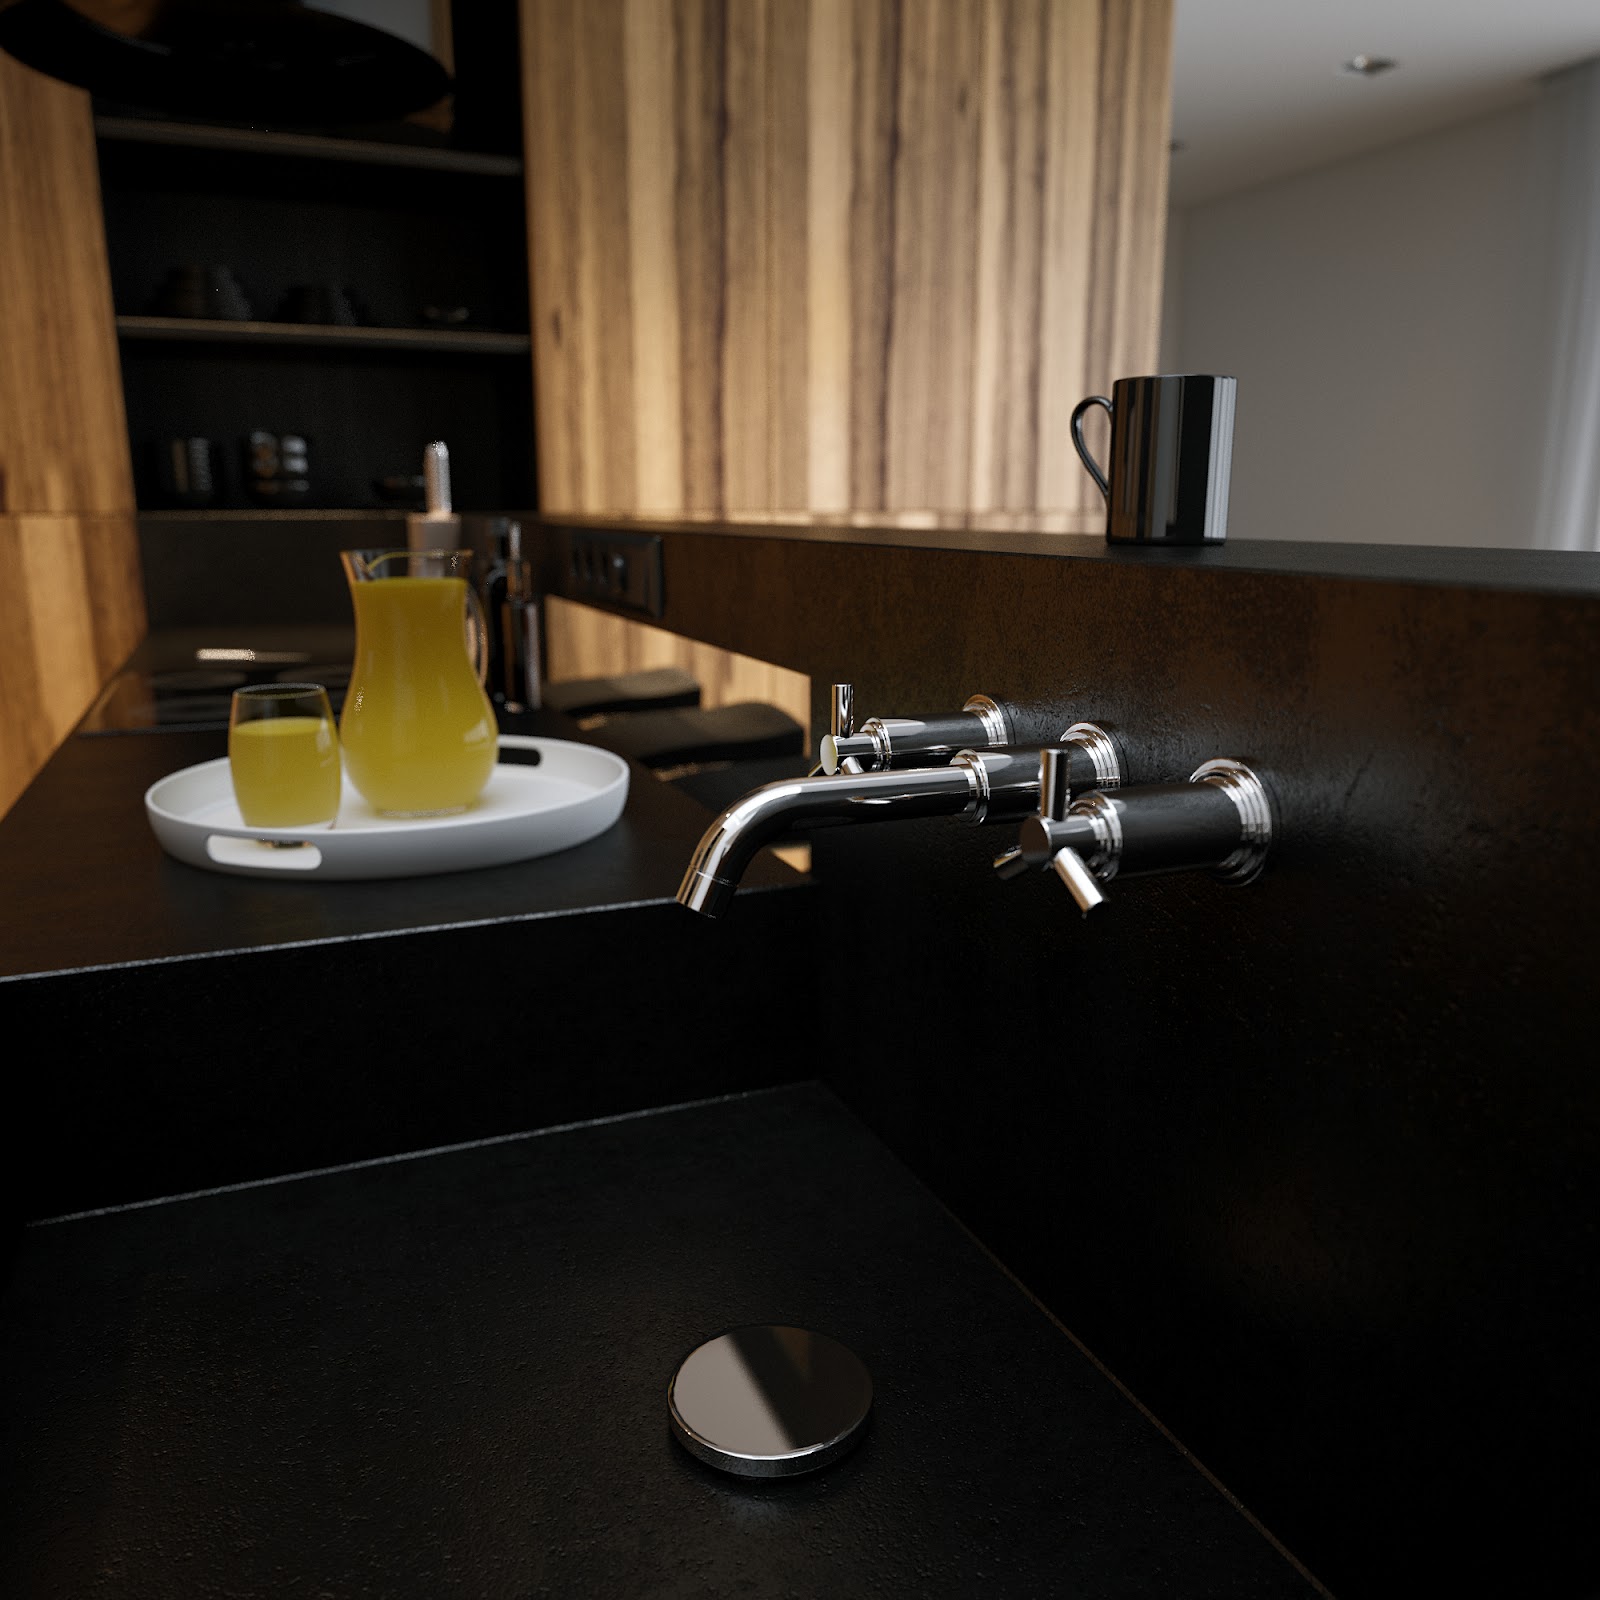 Black Corian Kitchen Sink Worktop Interior Design Ideas